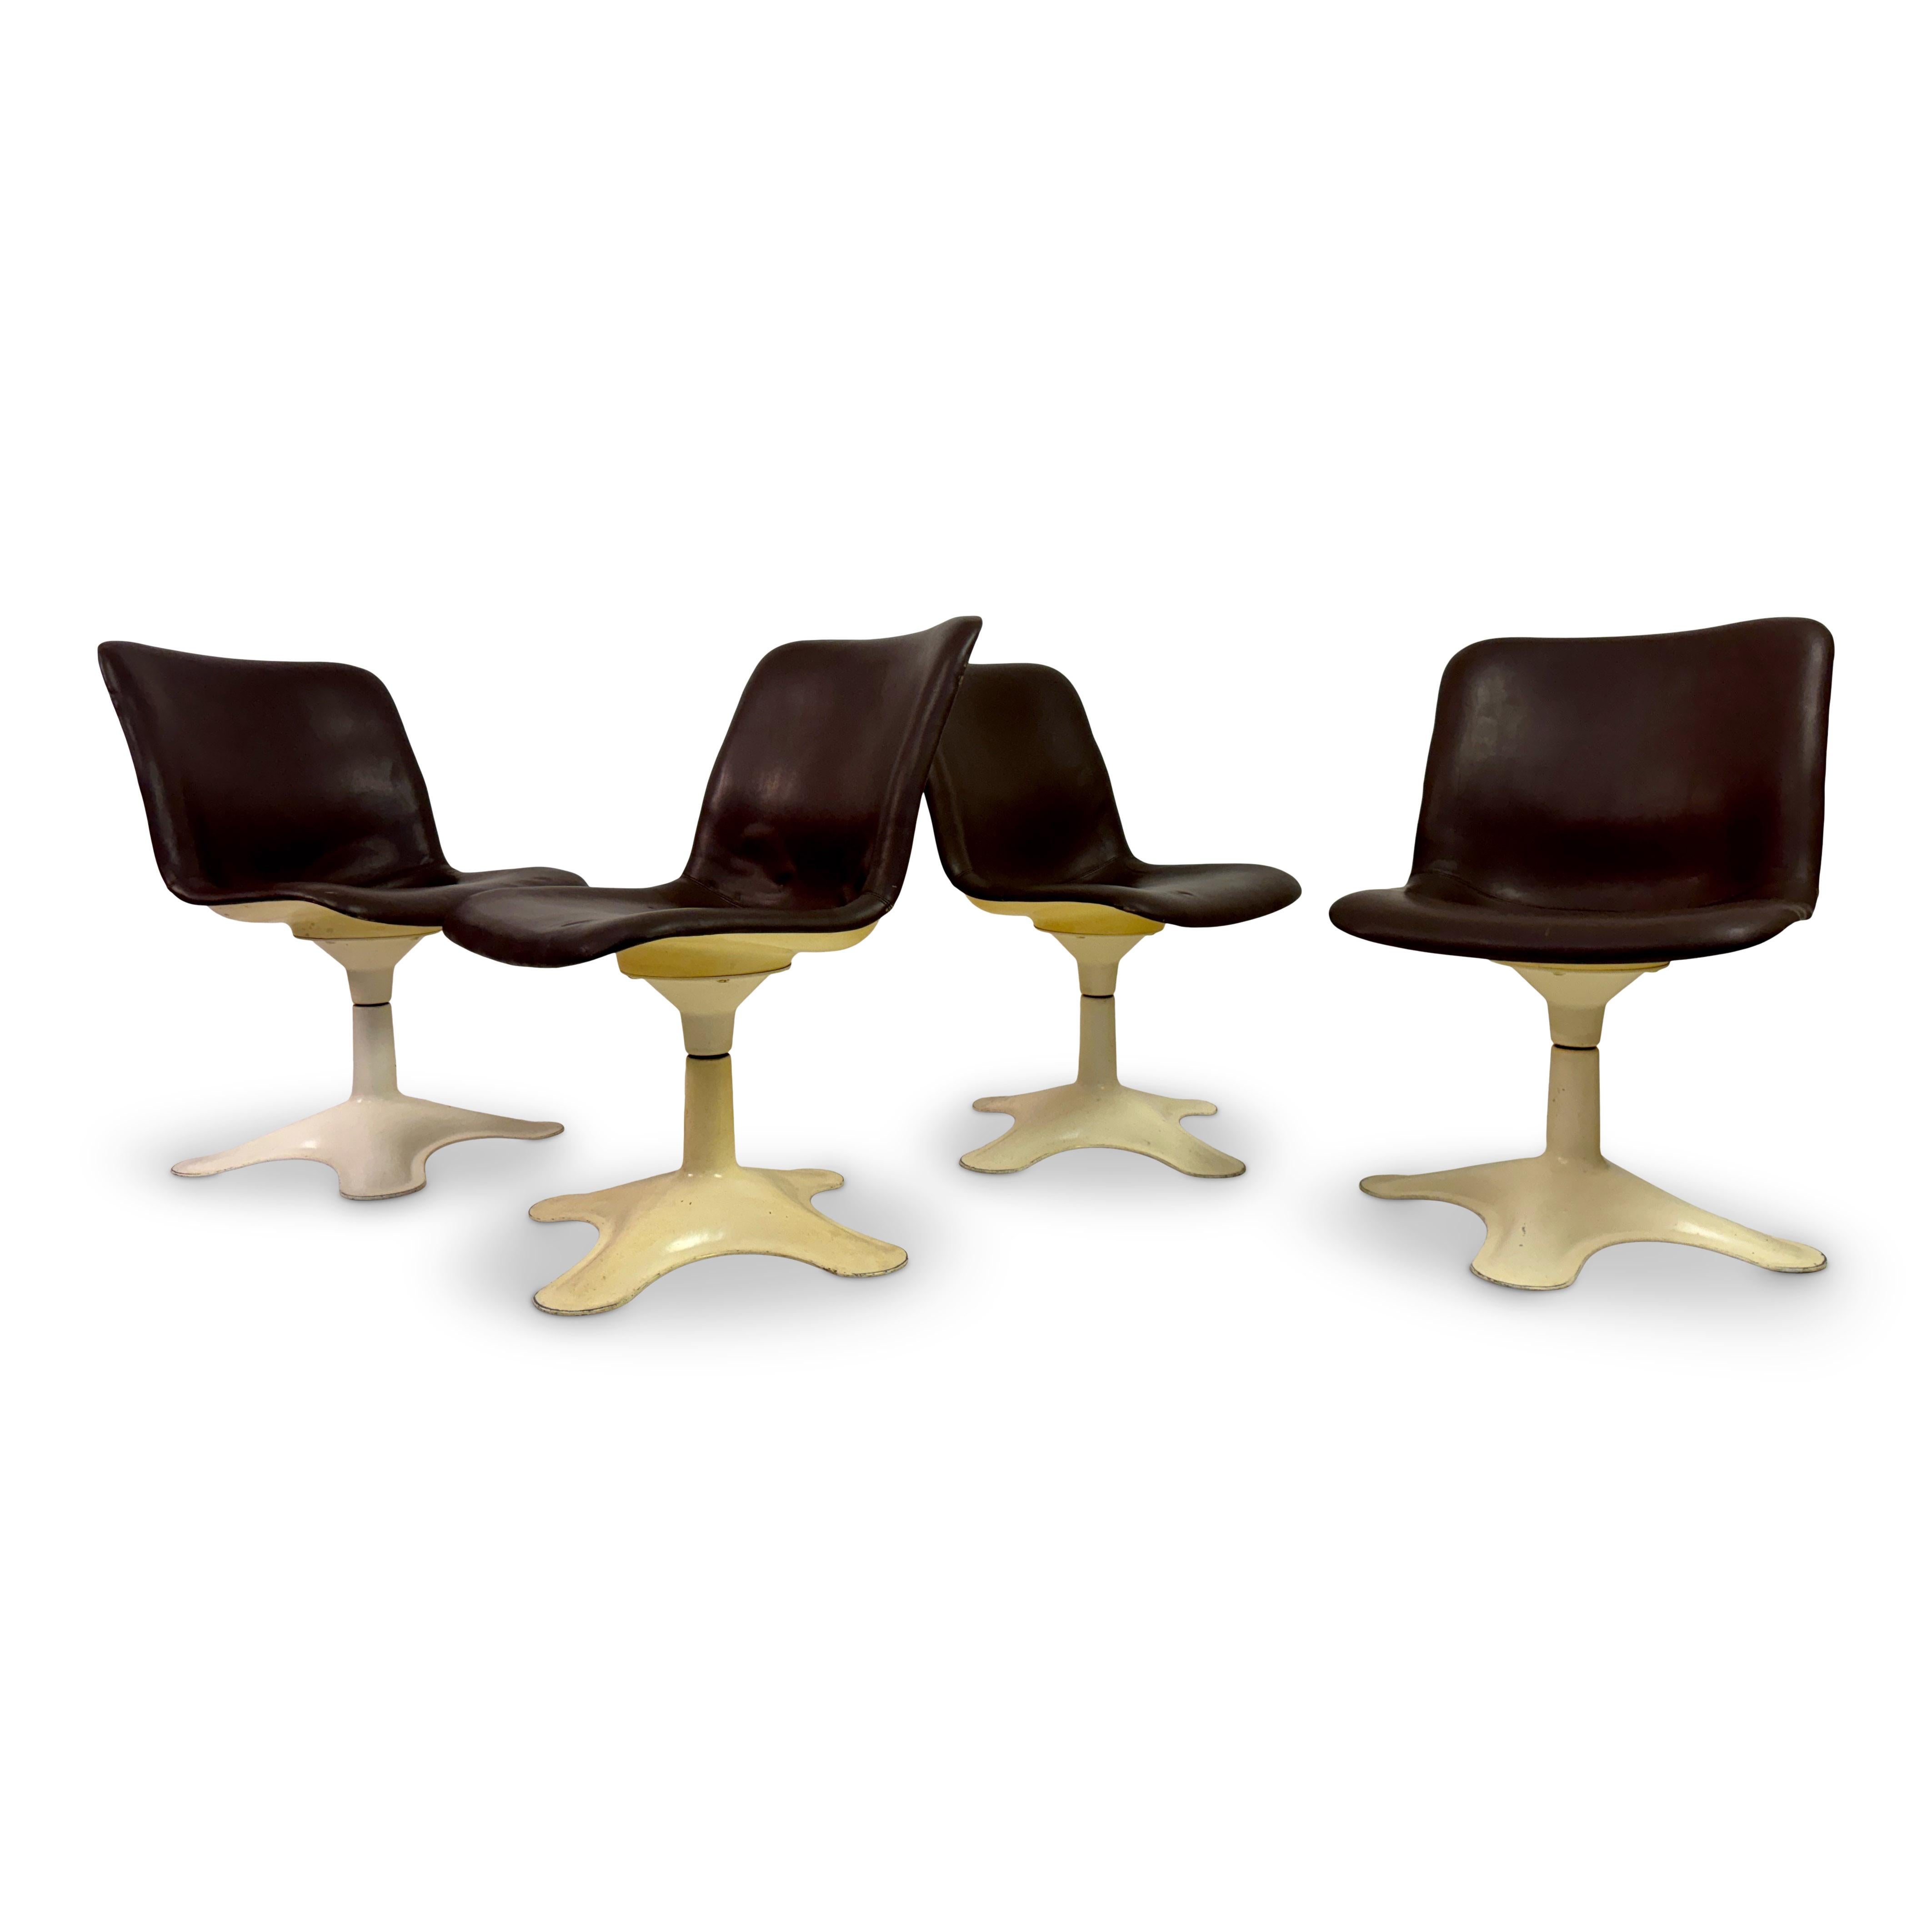 Quatre chaises de salle à manger

Par Yrjö Kukkapuro

Pour Haimi

Modèle 415A

Sièges en cuir marron

Base en fibre de verre et en aluminium de forme organique

Décoloration de certains dossiers de chaises. Ceux-ci peuvent être remis à neuf si on le